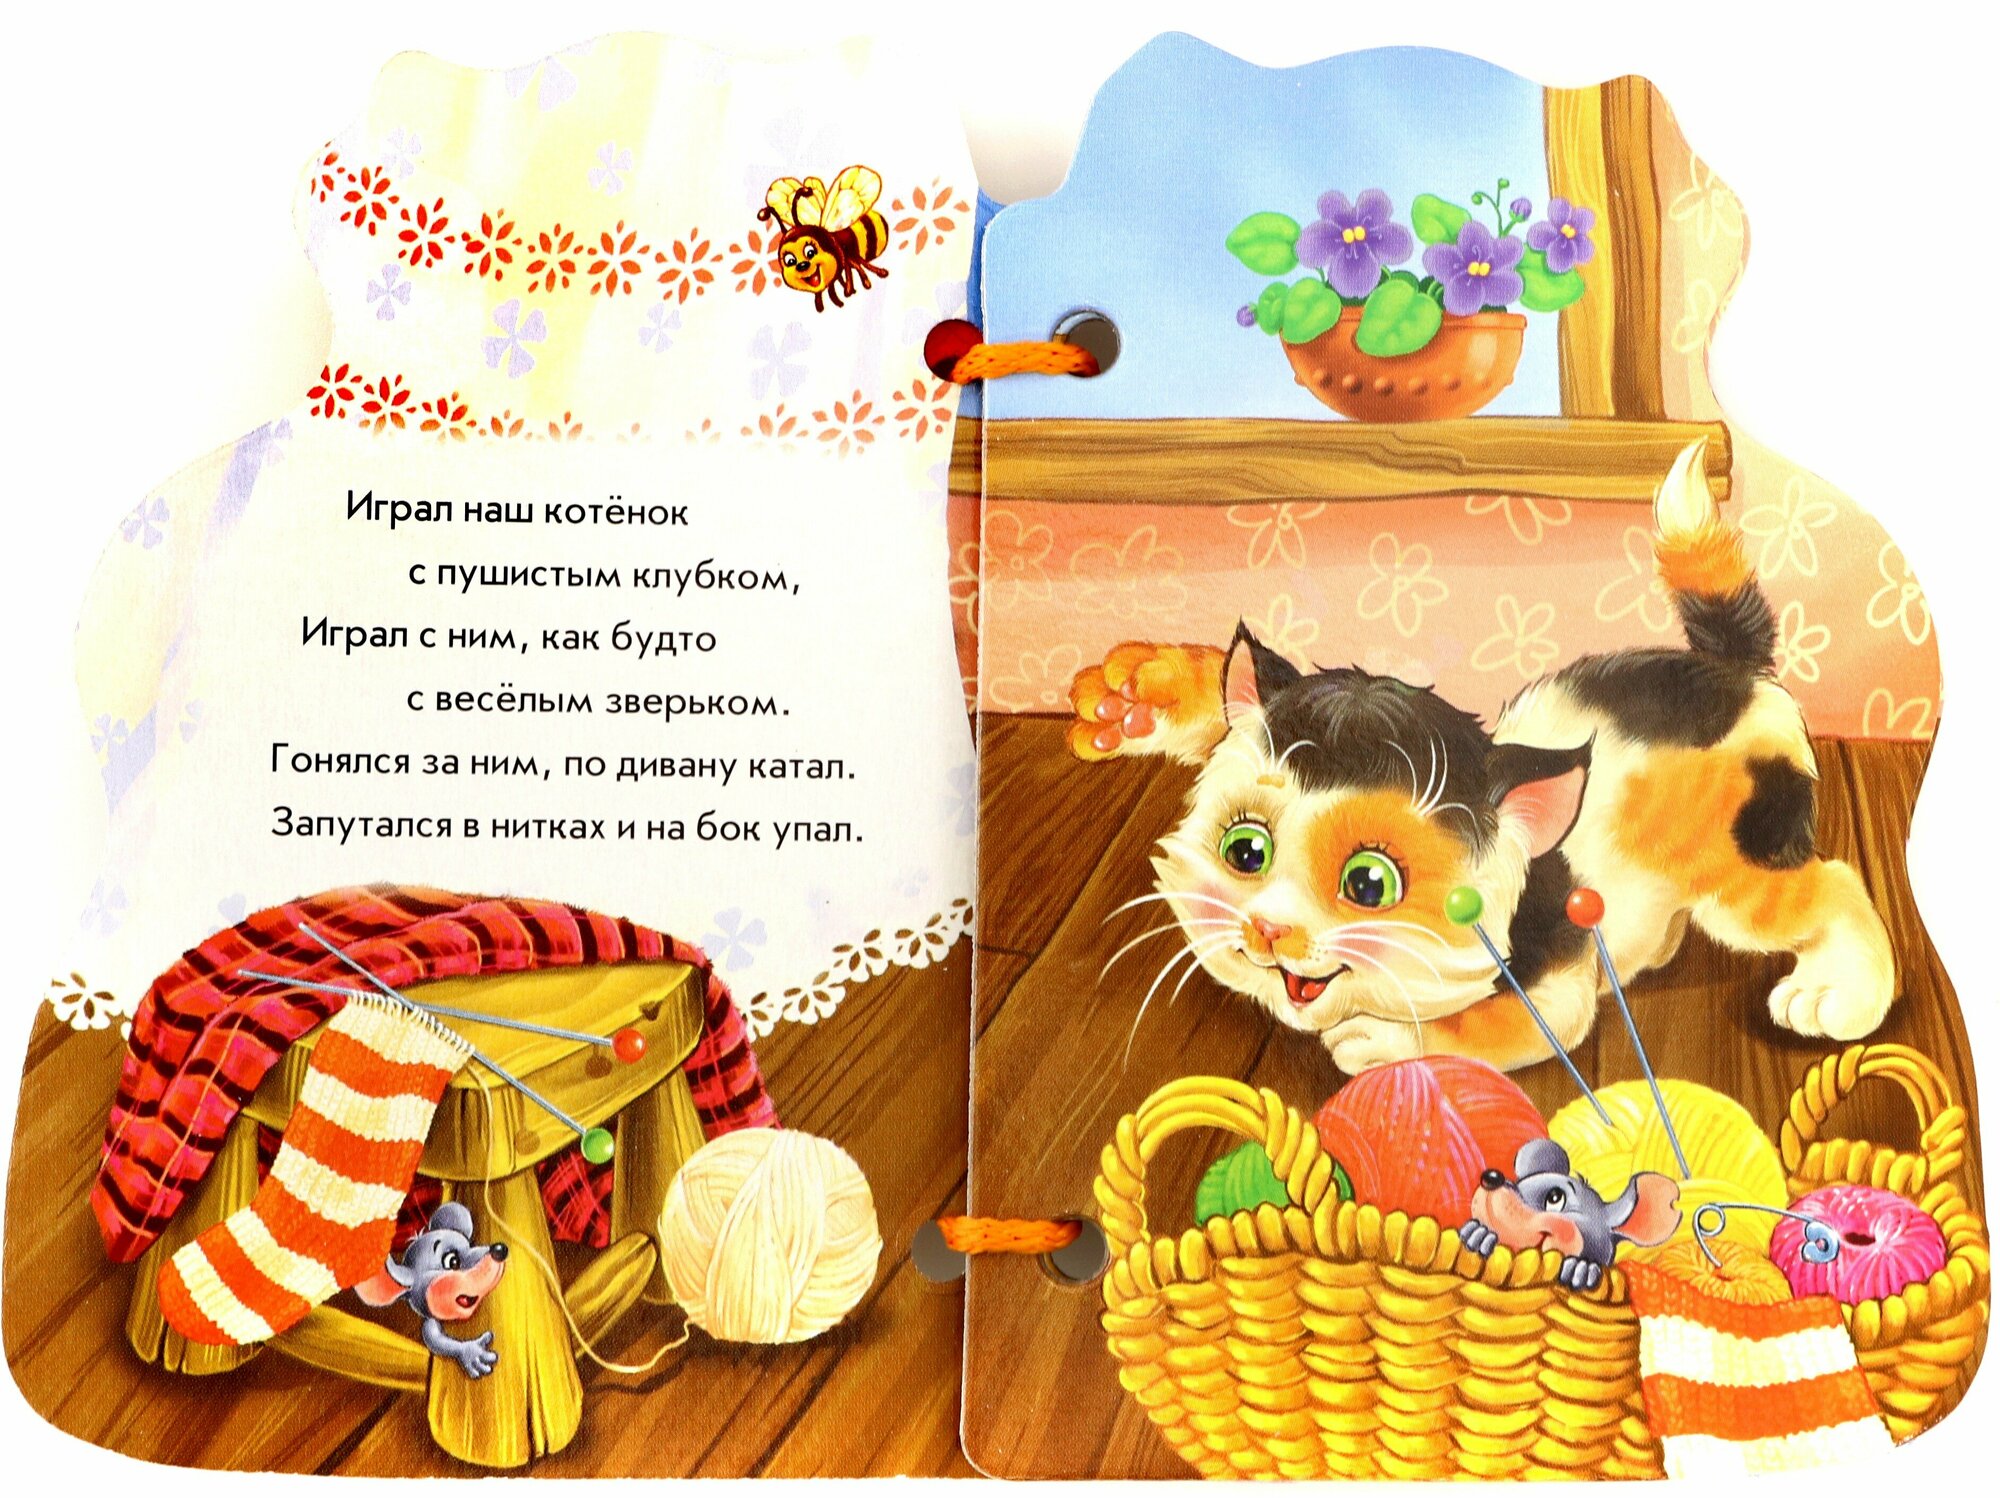 Котёнок (Кривченко Рената С.) - фото №3